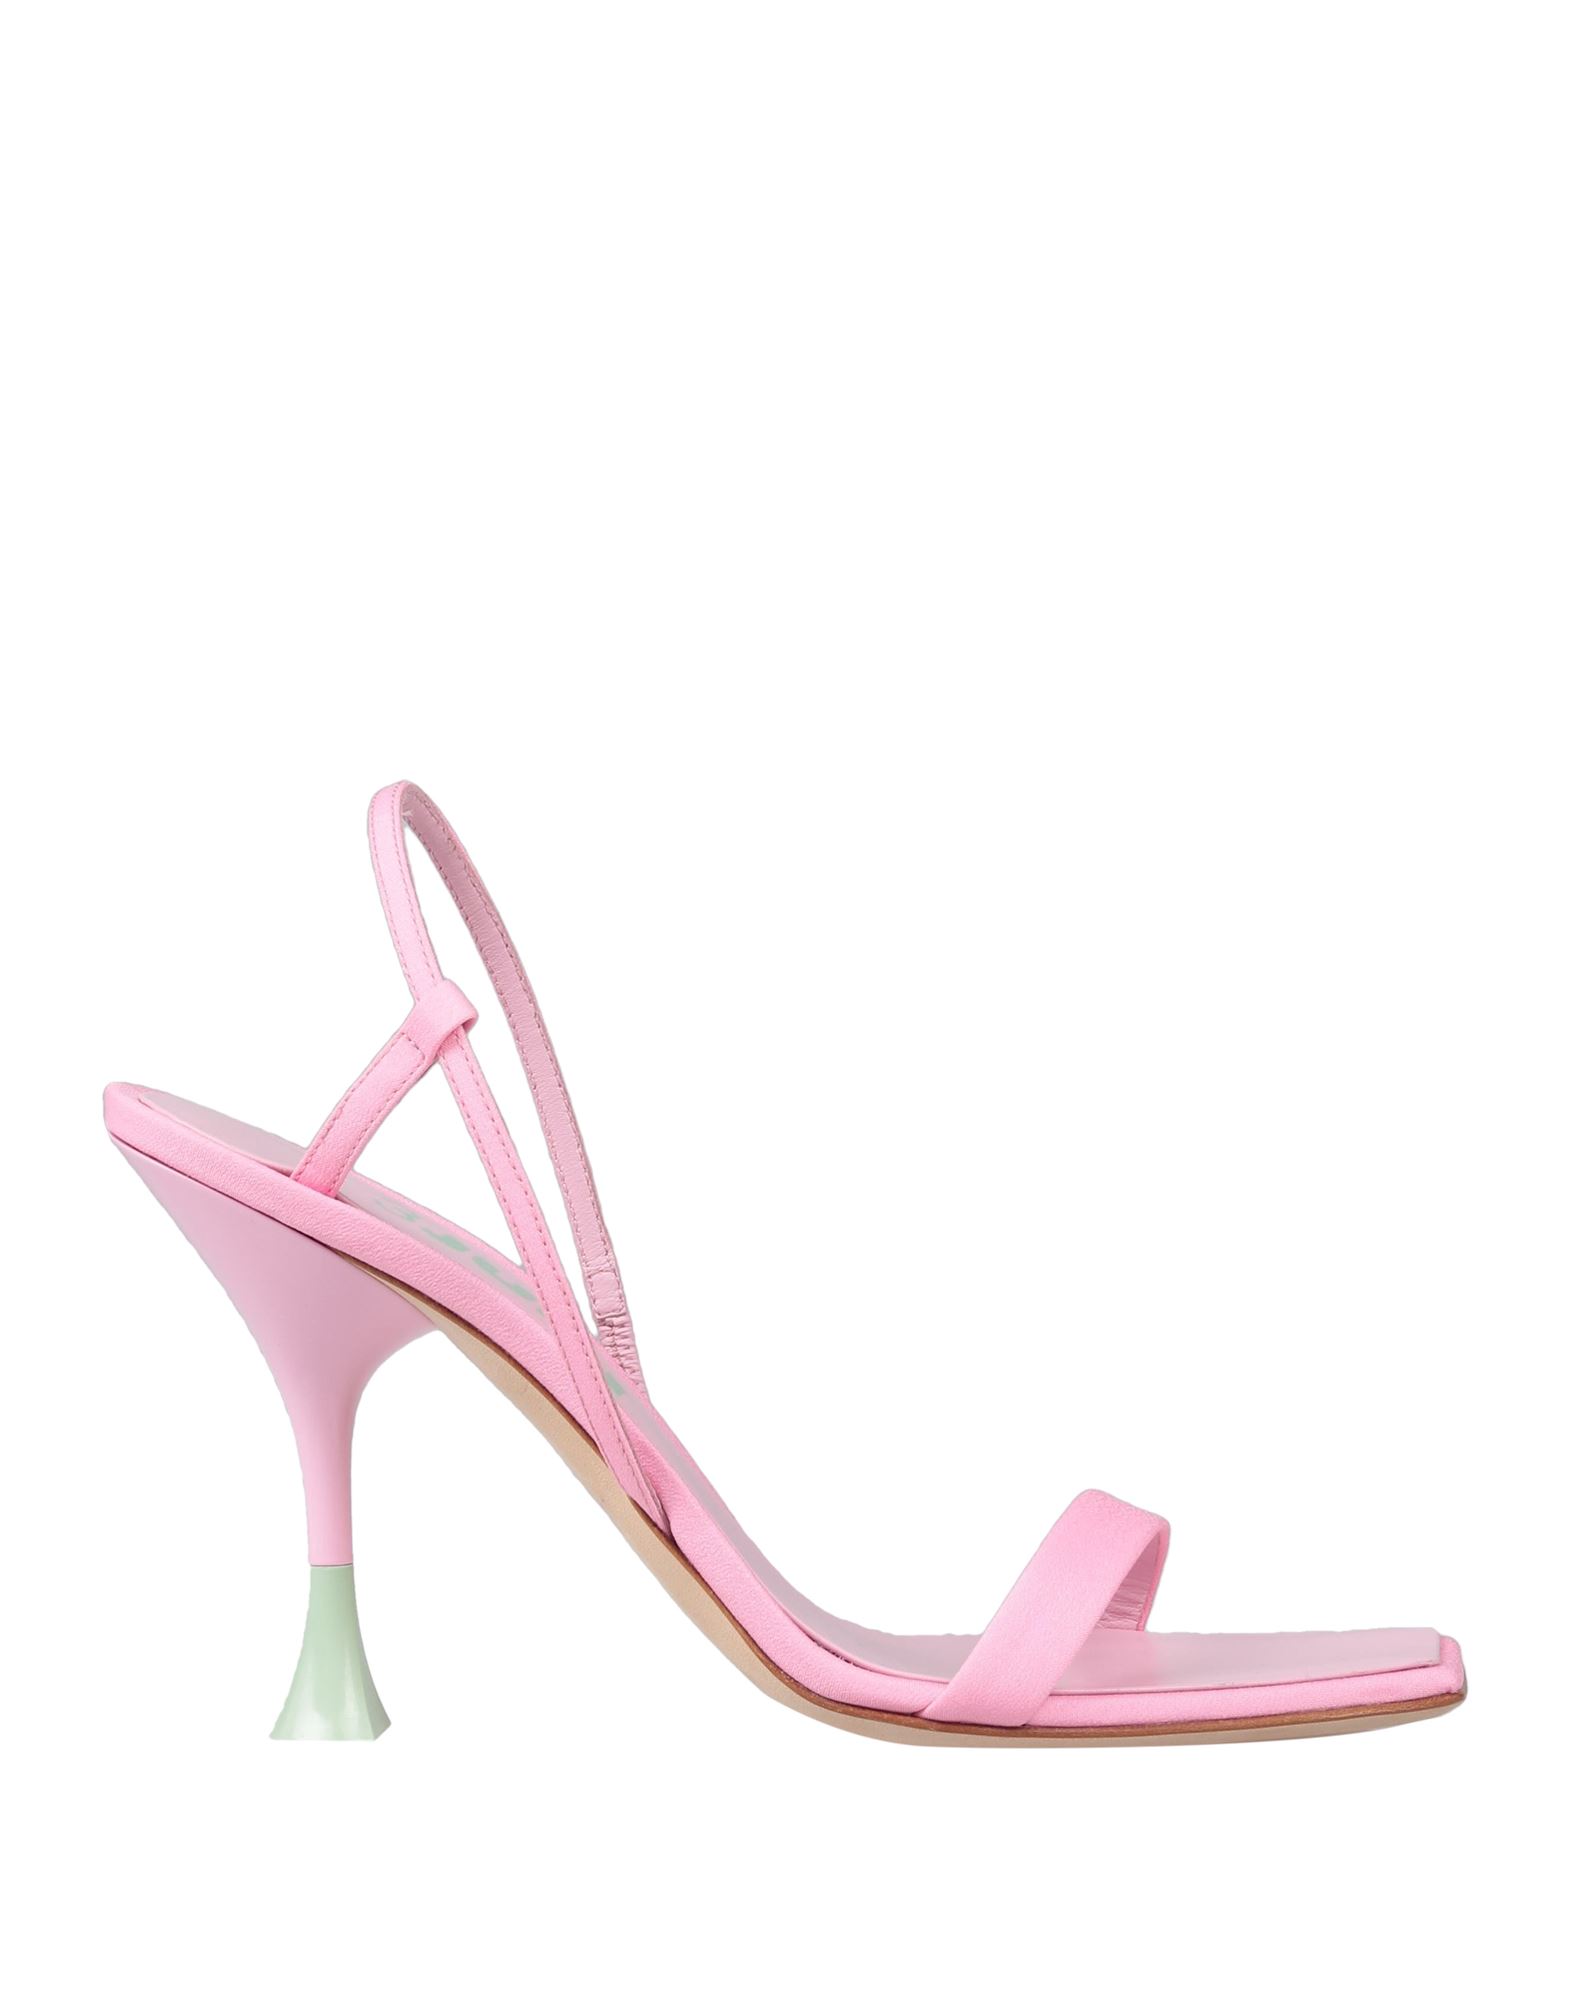 Shop 3juin Woman Sandals Pink Size 6.5 Textile Fibers